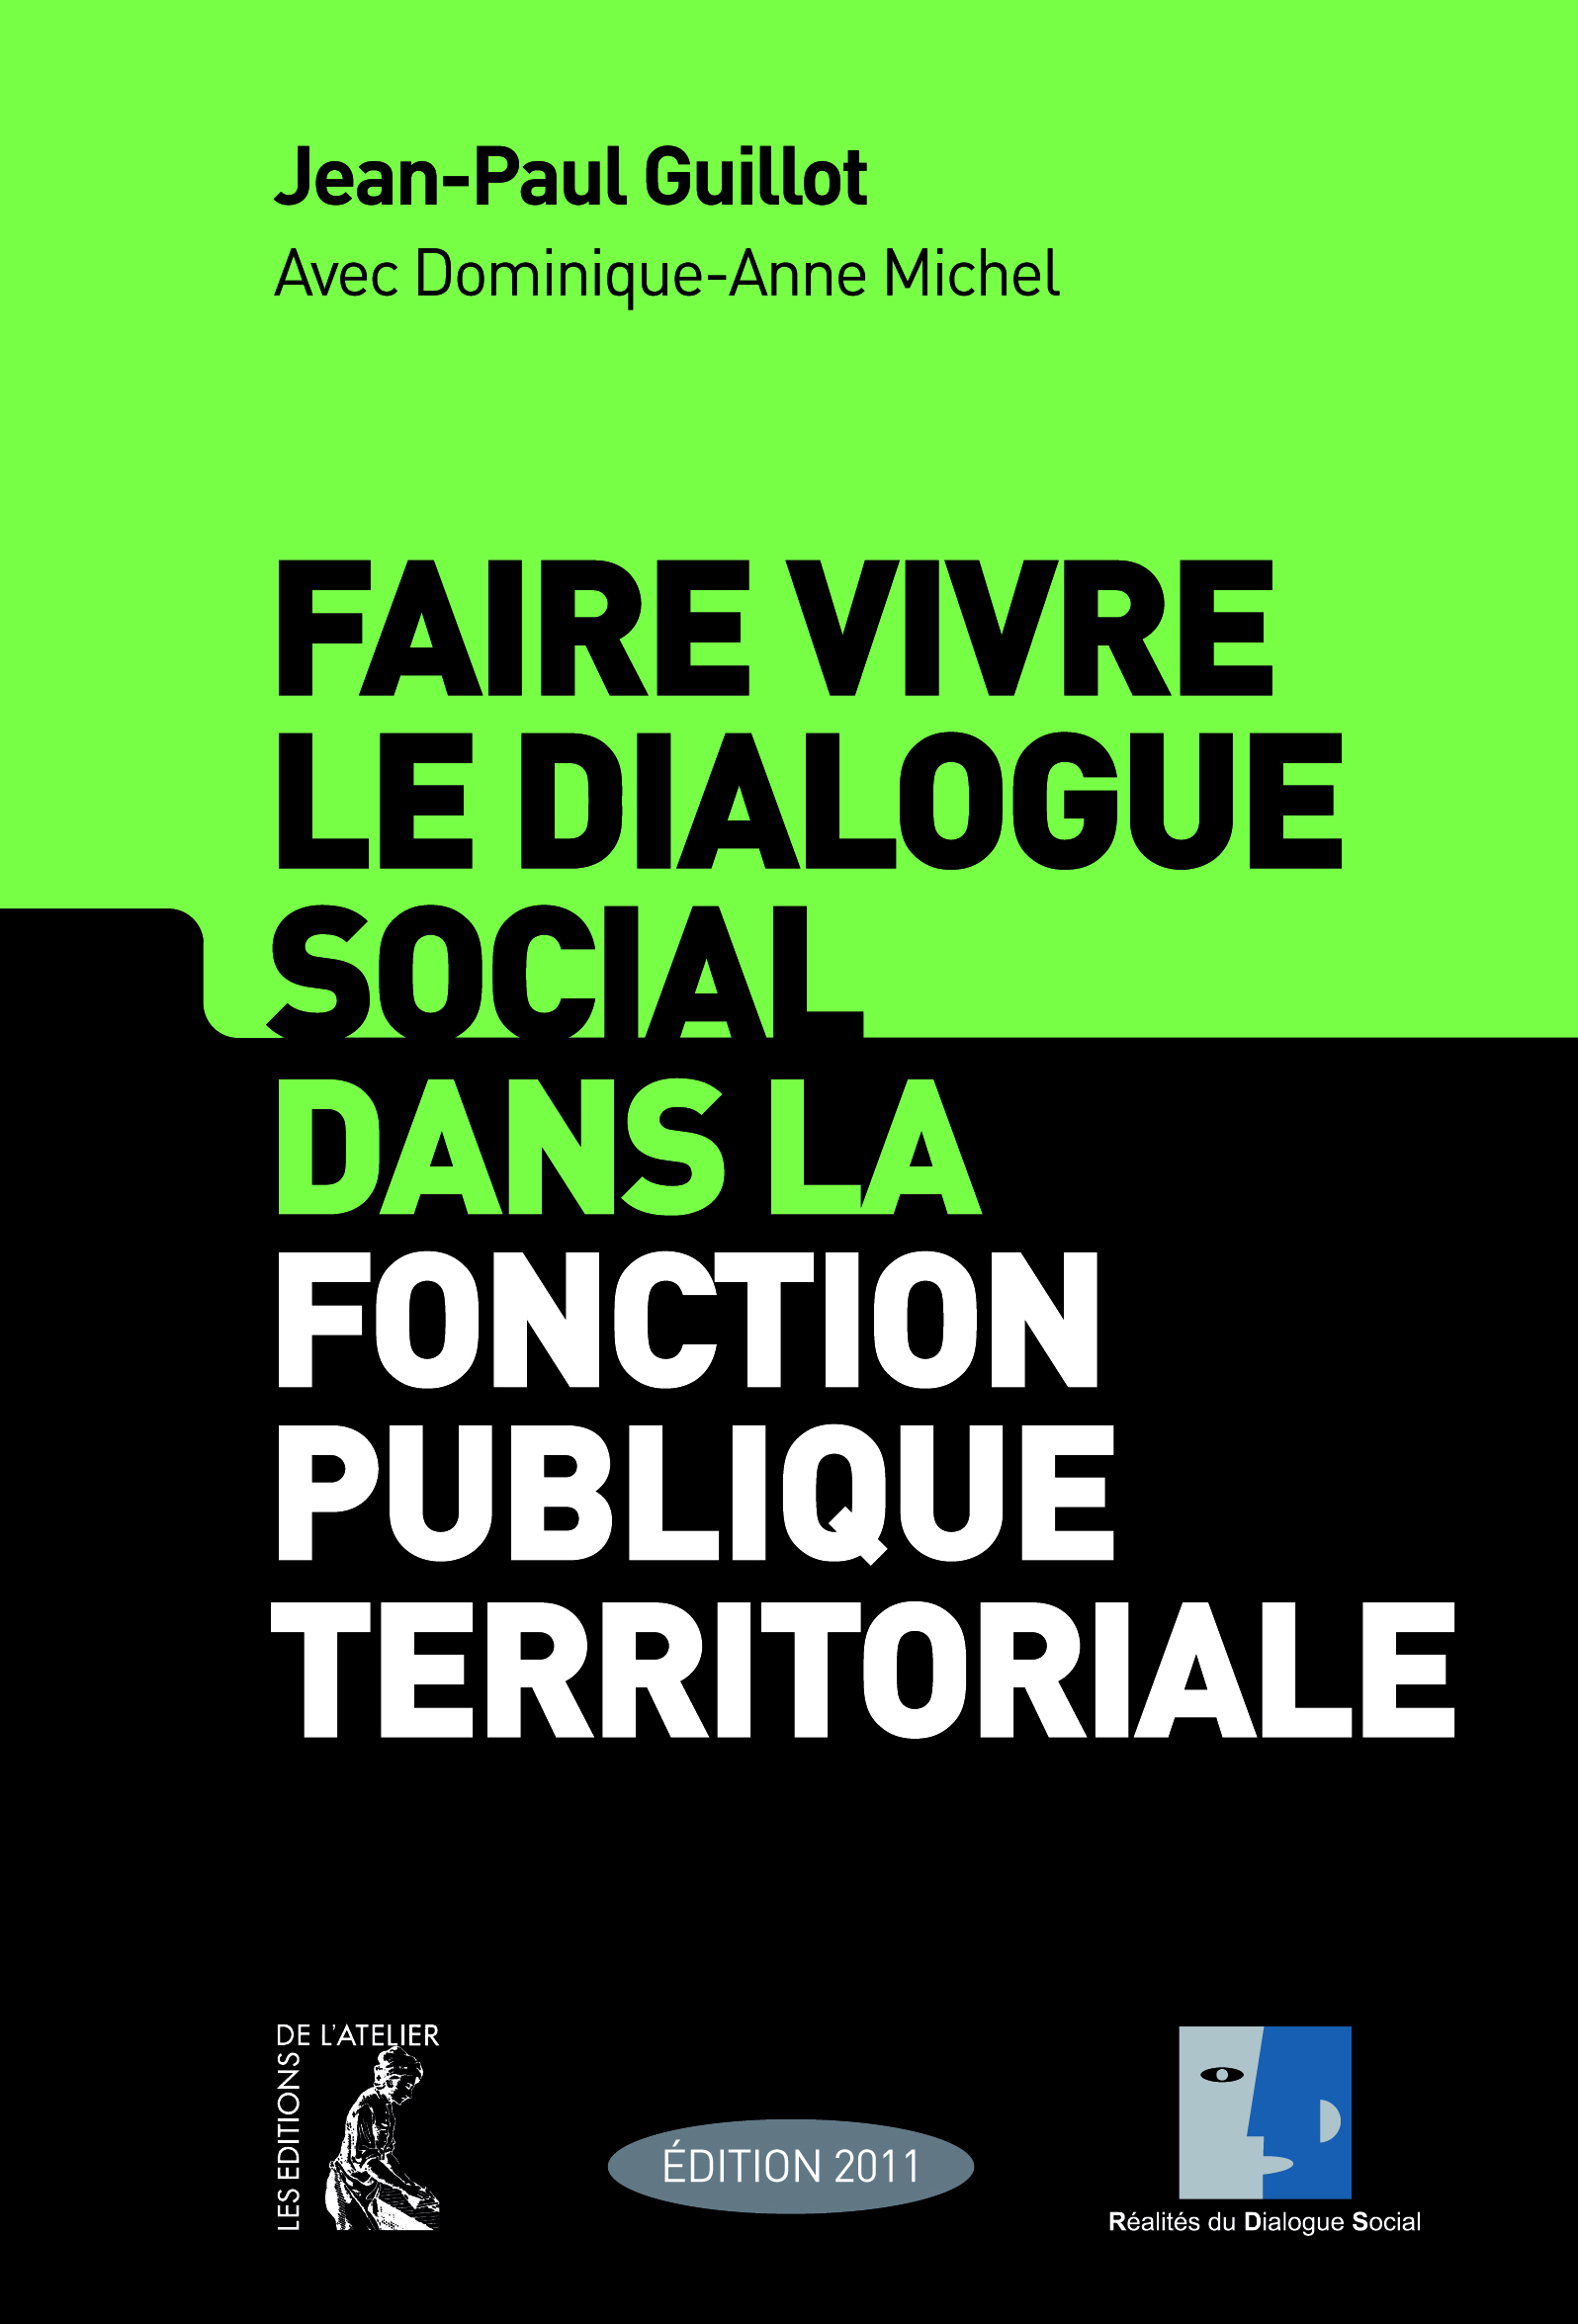 Faire vivre le dialogue social dans la fonction publique territoriale - Jean-Paul Guillot, Dominique-Anne Michel - Éditions de l'Atelier